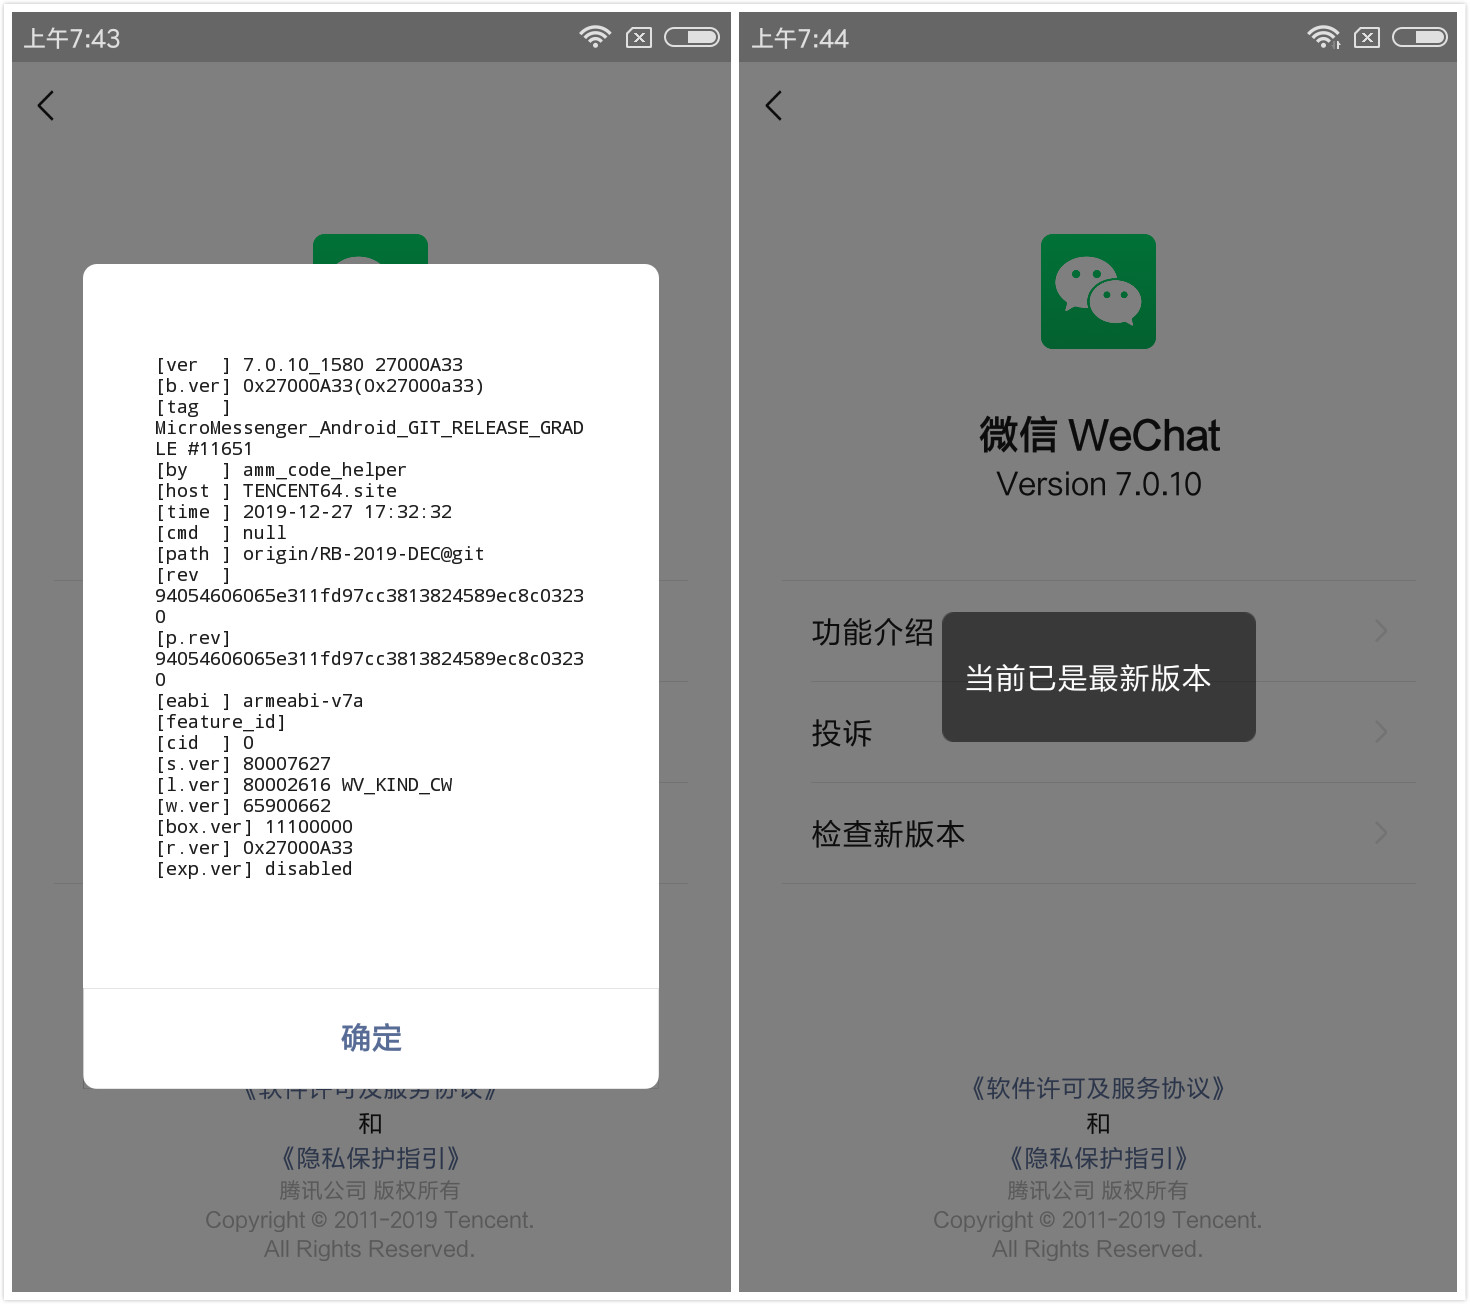 插图-微信WeChat 7.0.15 Galaxy Z Fold2 三星版